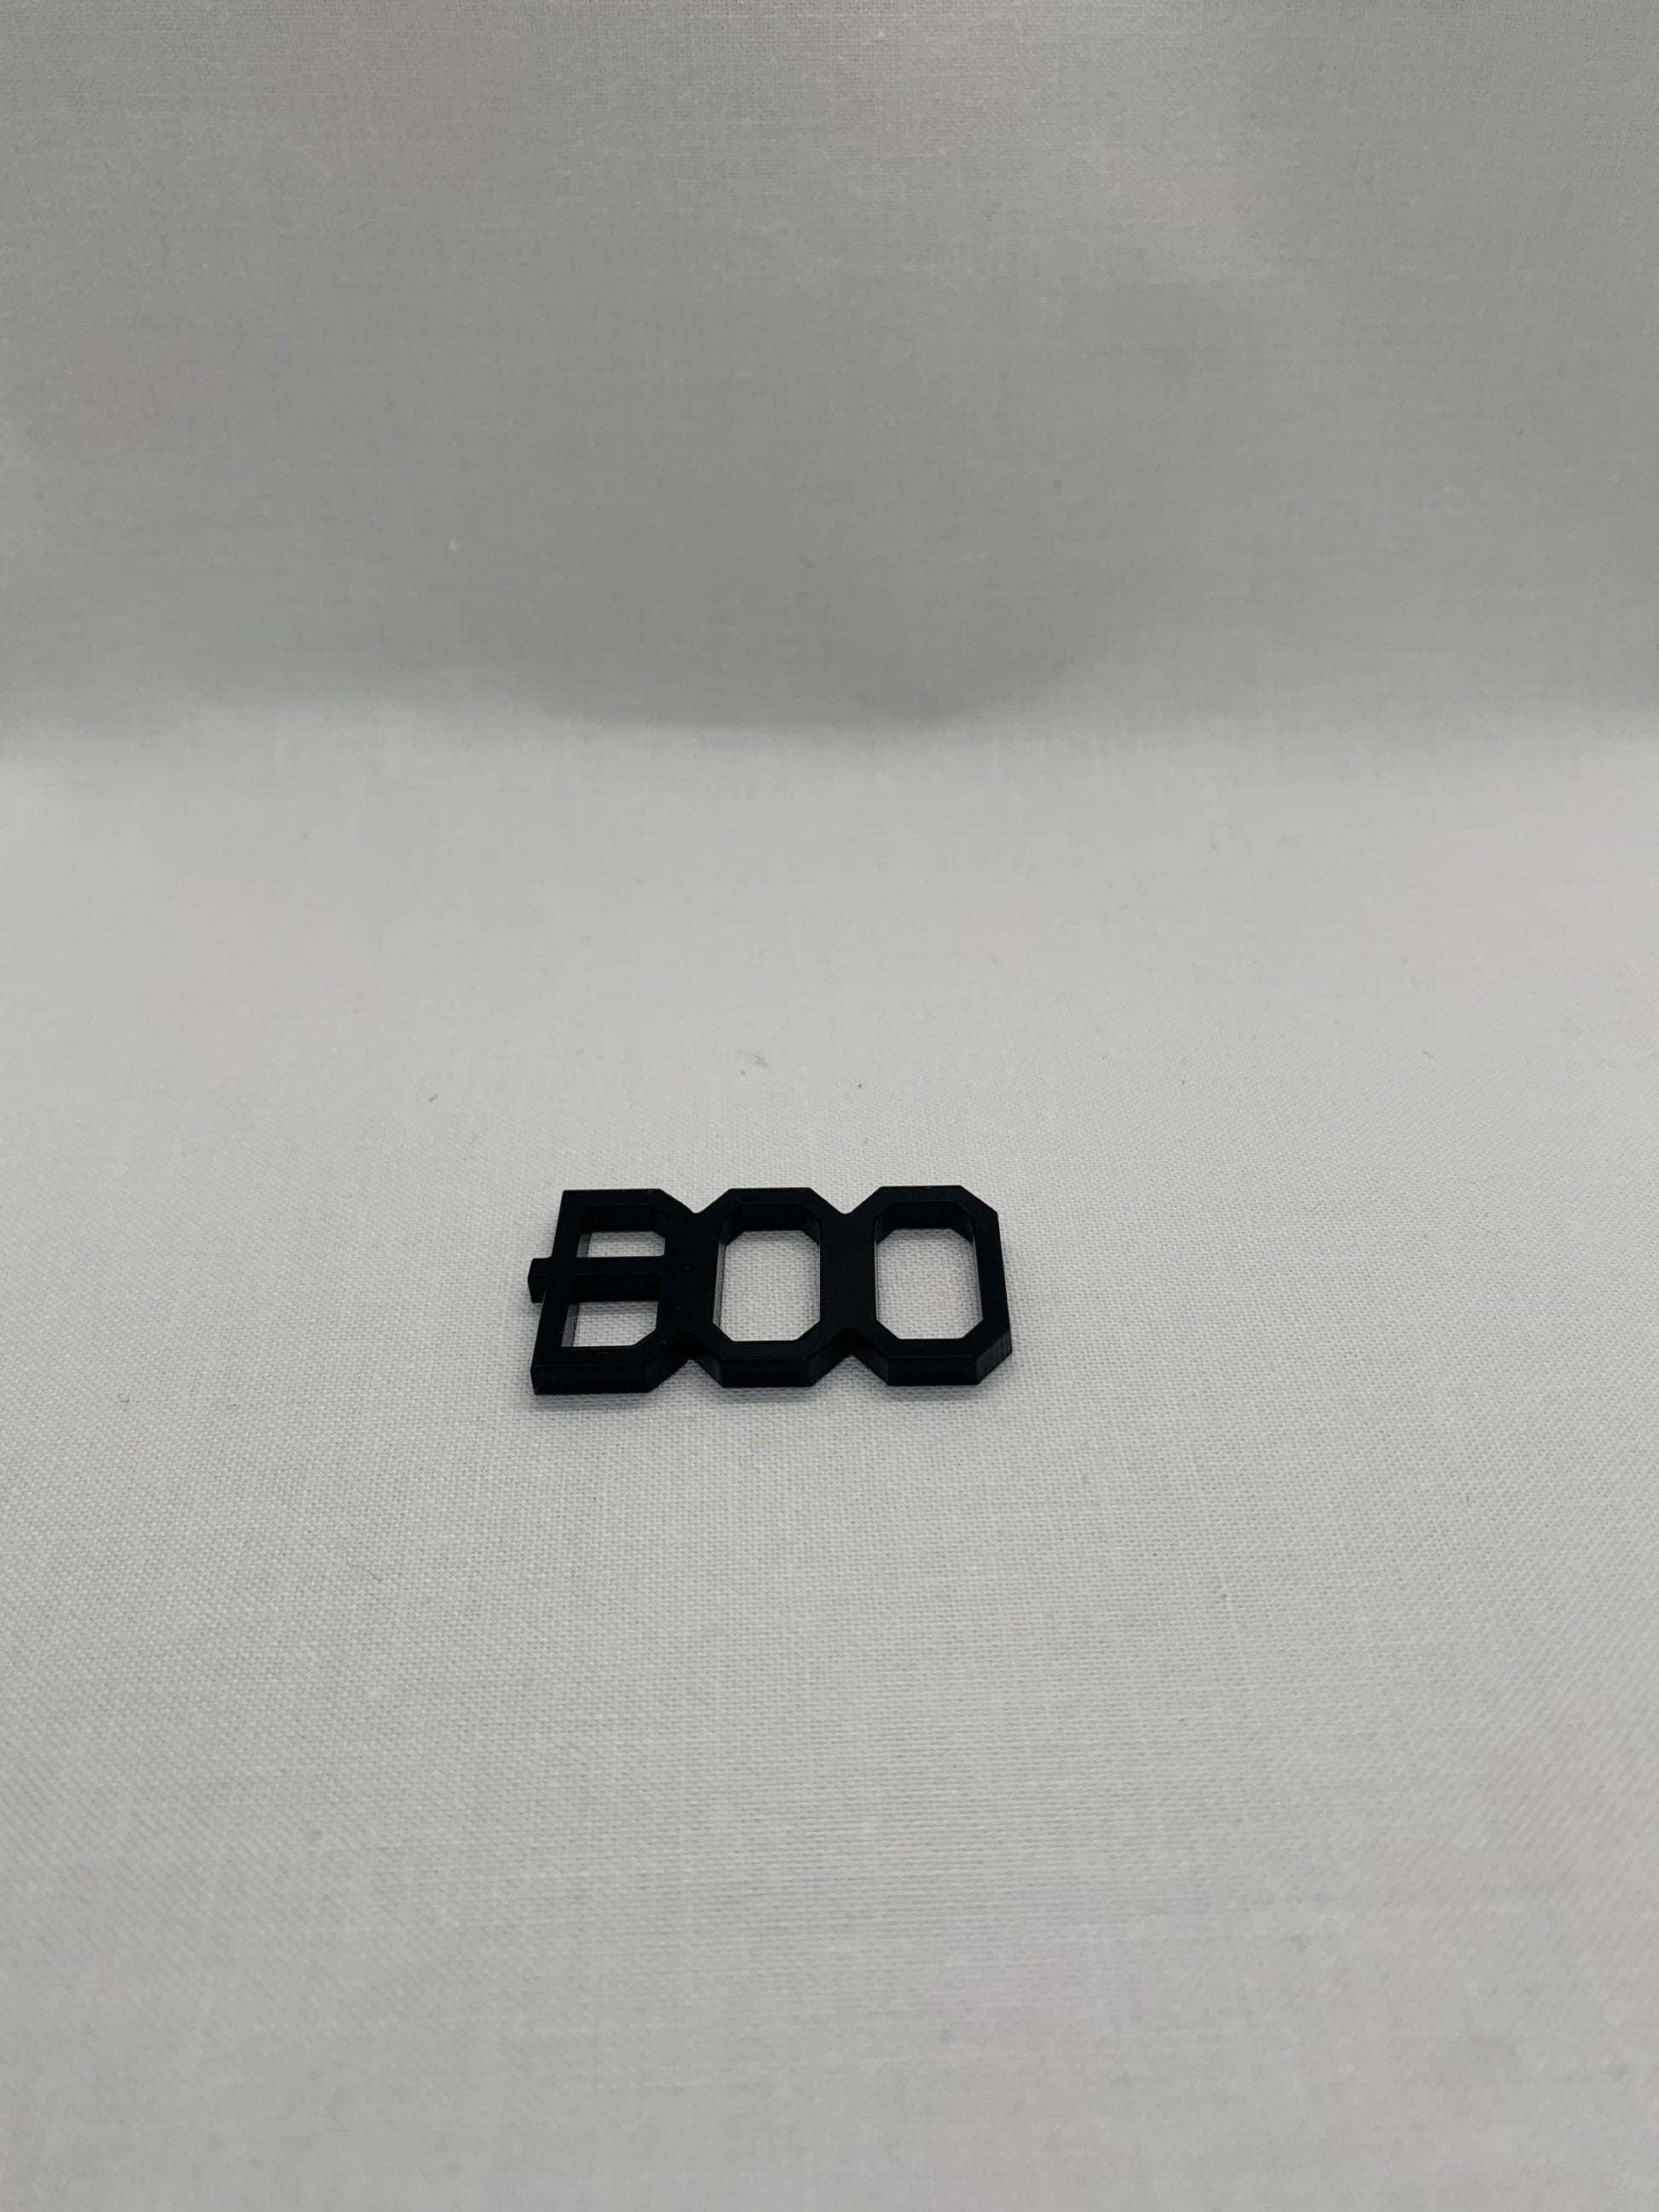 Boo - Creative Designs By Kari